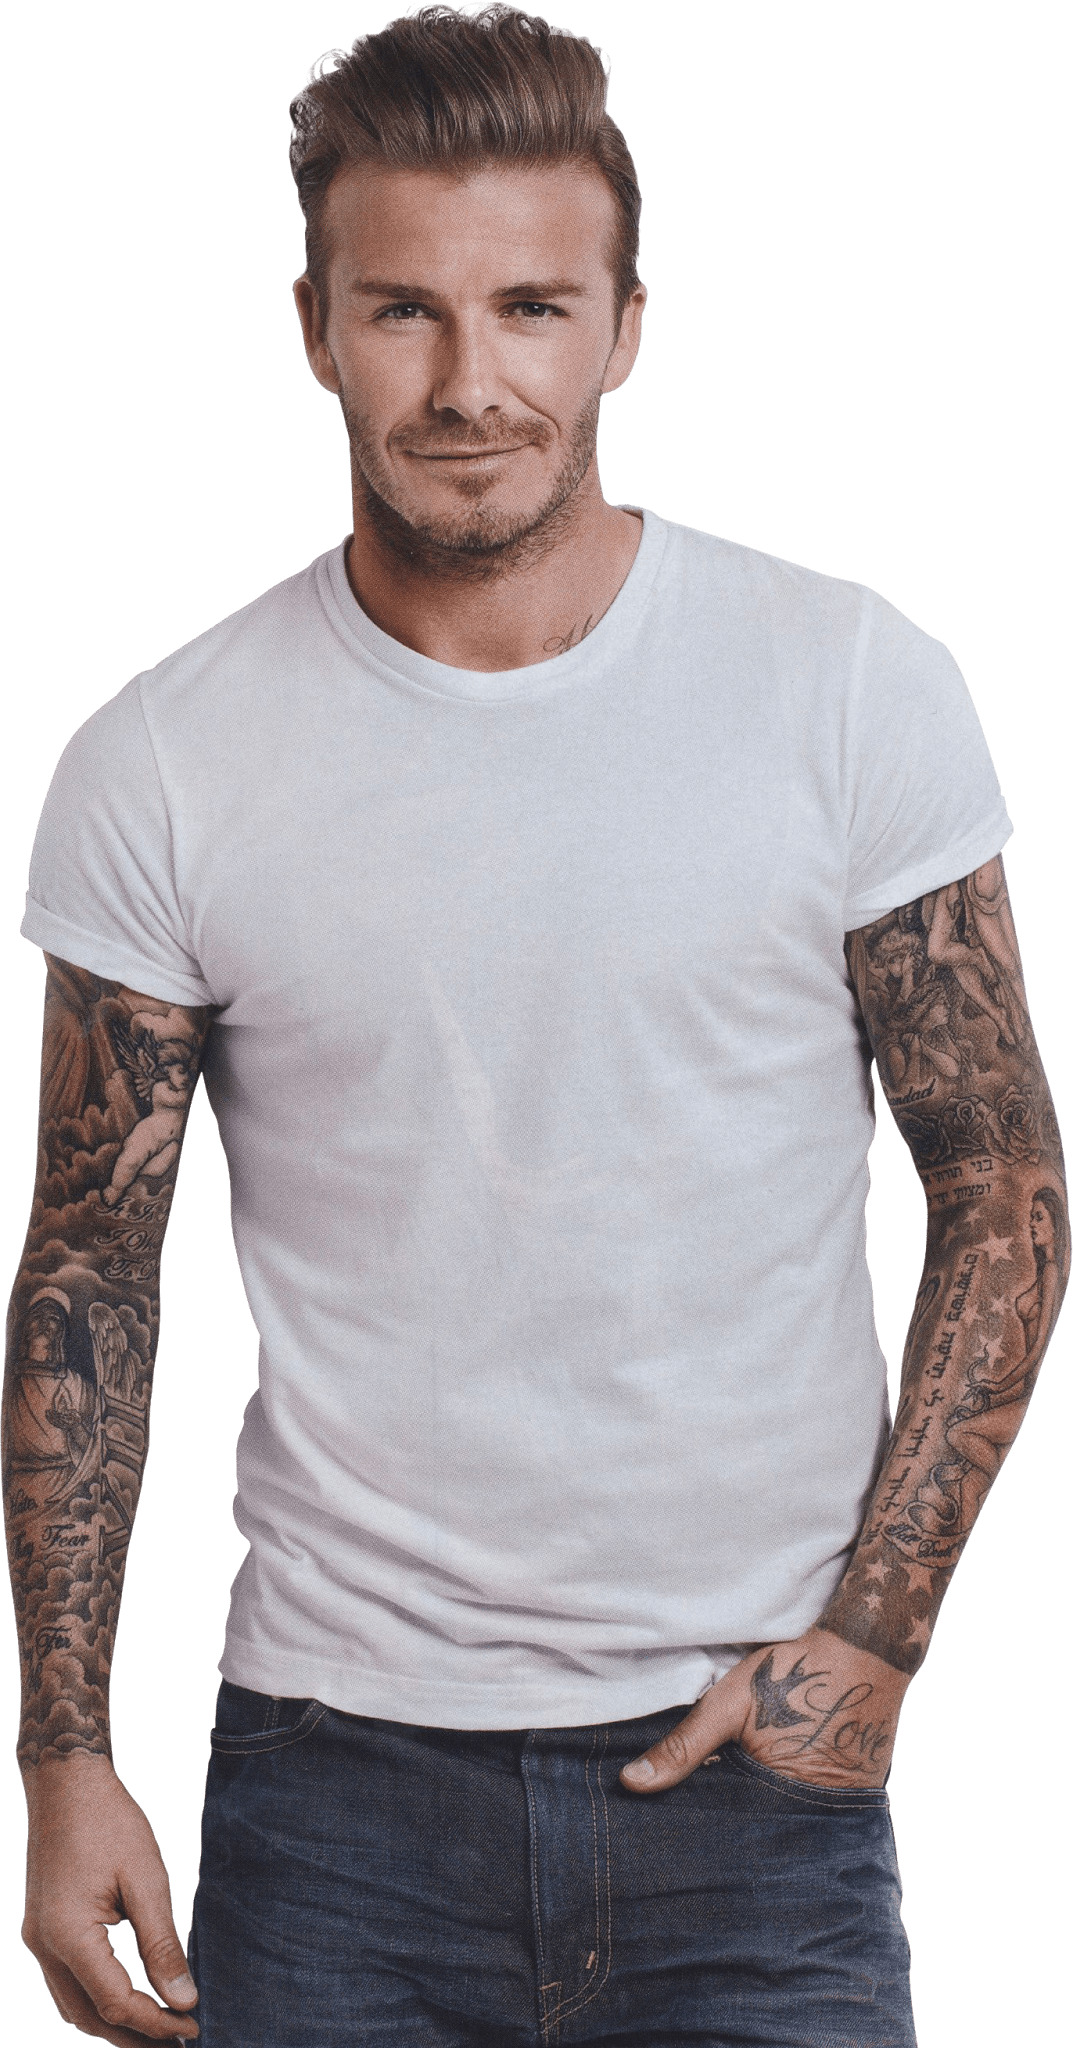 David Beckham Tattoos png icons